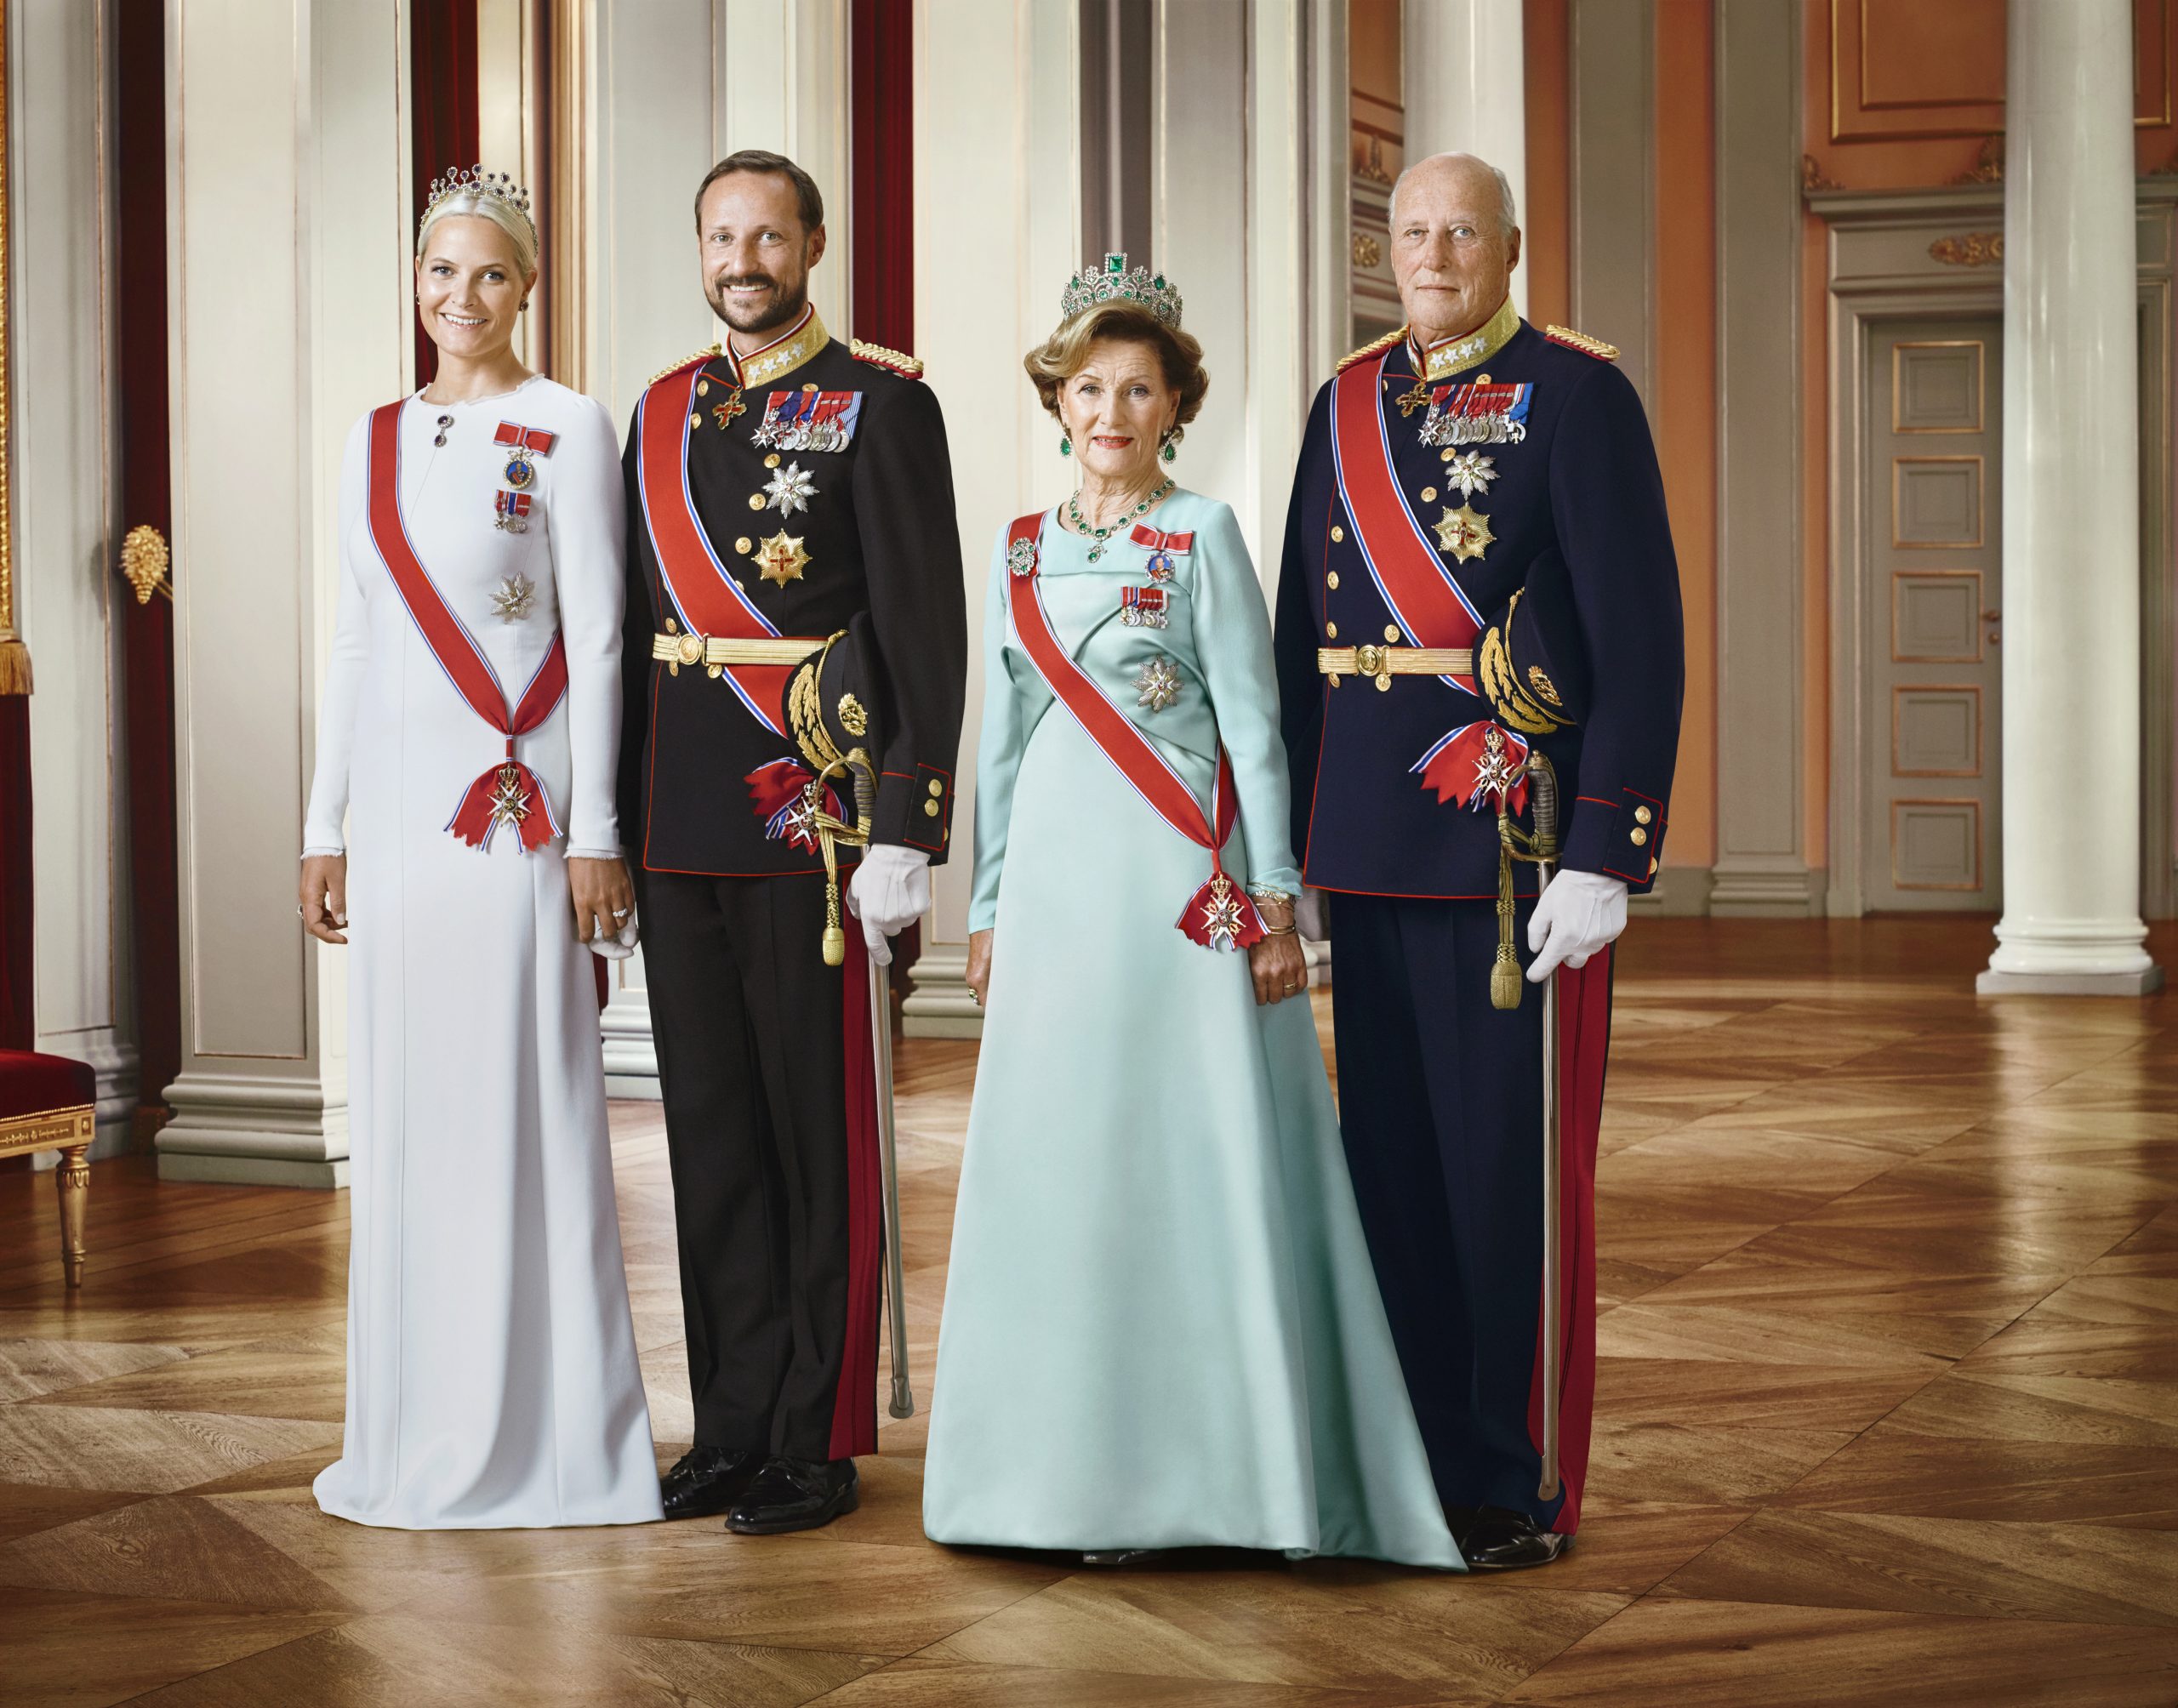 Offisielt bilde av Deres Majesteter Kongen og Dronningen, Deres Kongelige Høyheter Kronprinsen og Kronprinsessen. Kongen og Kronprinsen i uniform, og Dronningen og Kronprinsessen i gallakjoler.